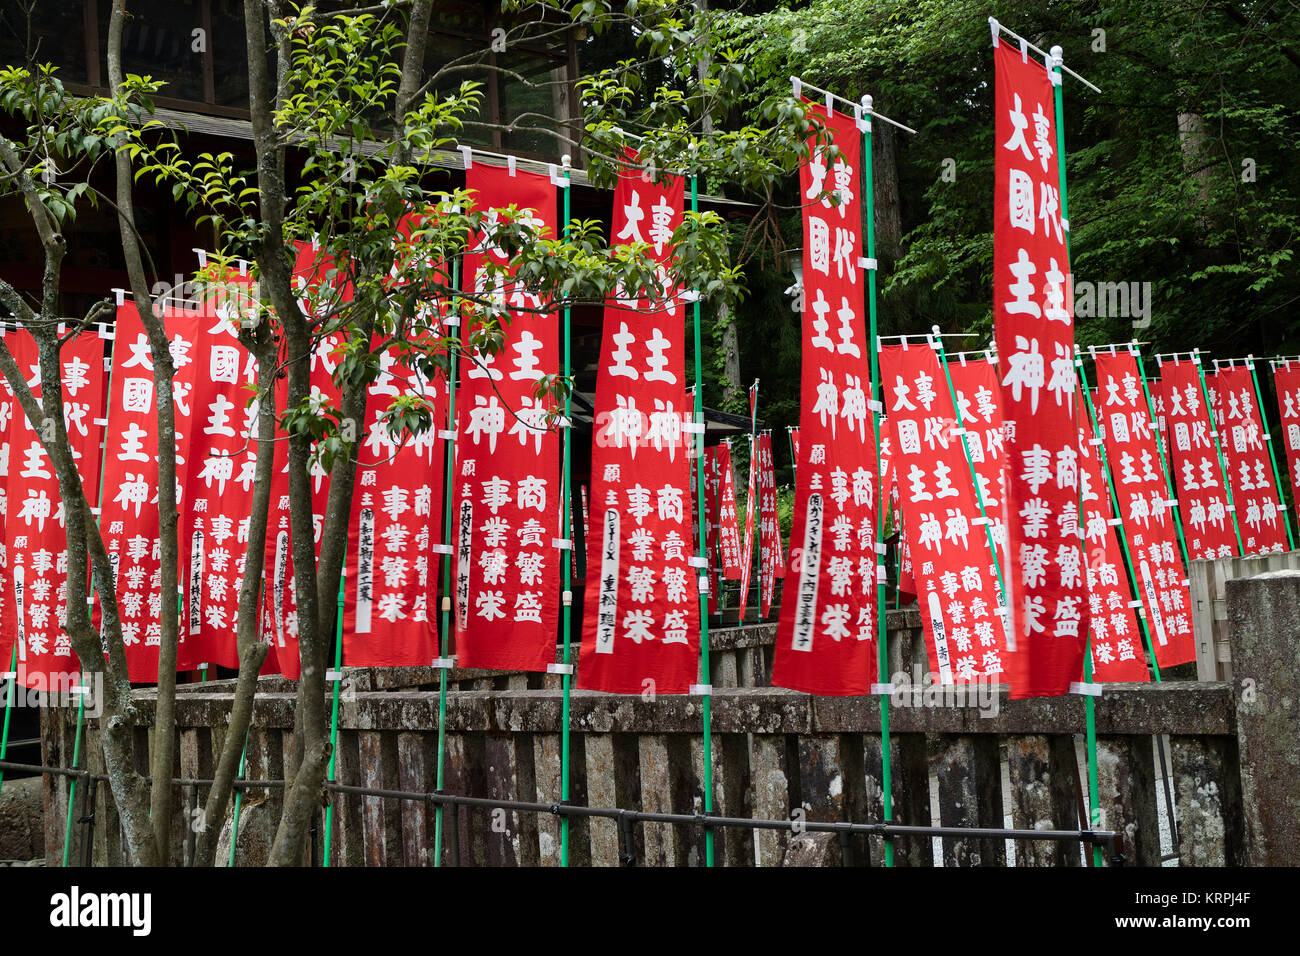 Ciudad de Fujiyoshida, Japón, 13 de junio de 2017: Rojo santuario Sengen Fujiyoshida pancartas en el Santuario en la ciudad de Fujiyoshida Foto de stock